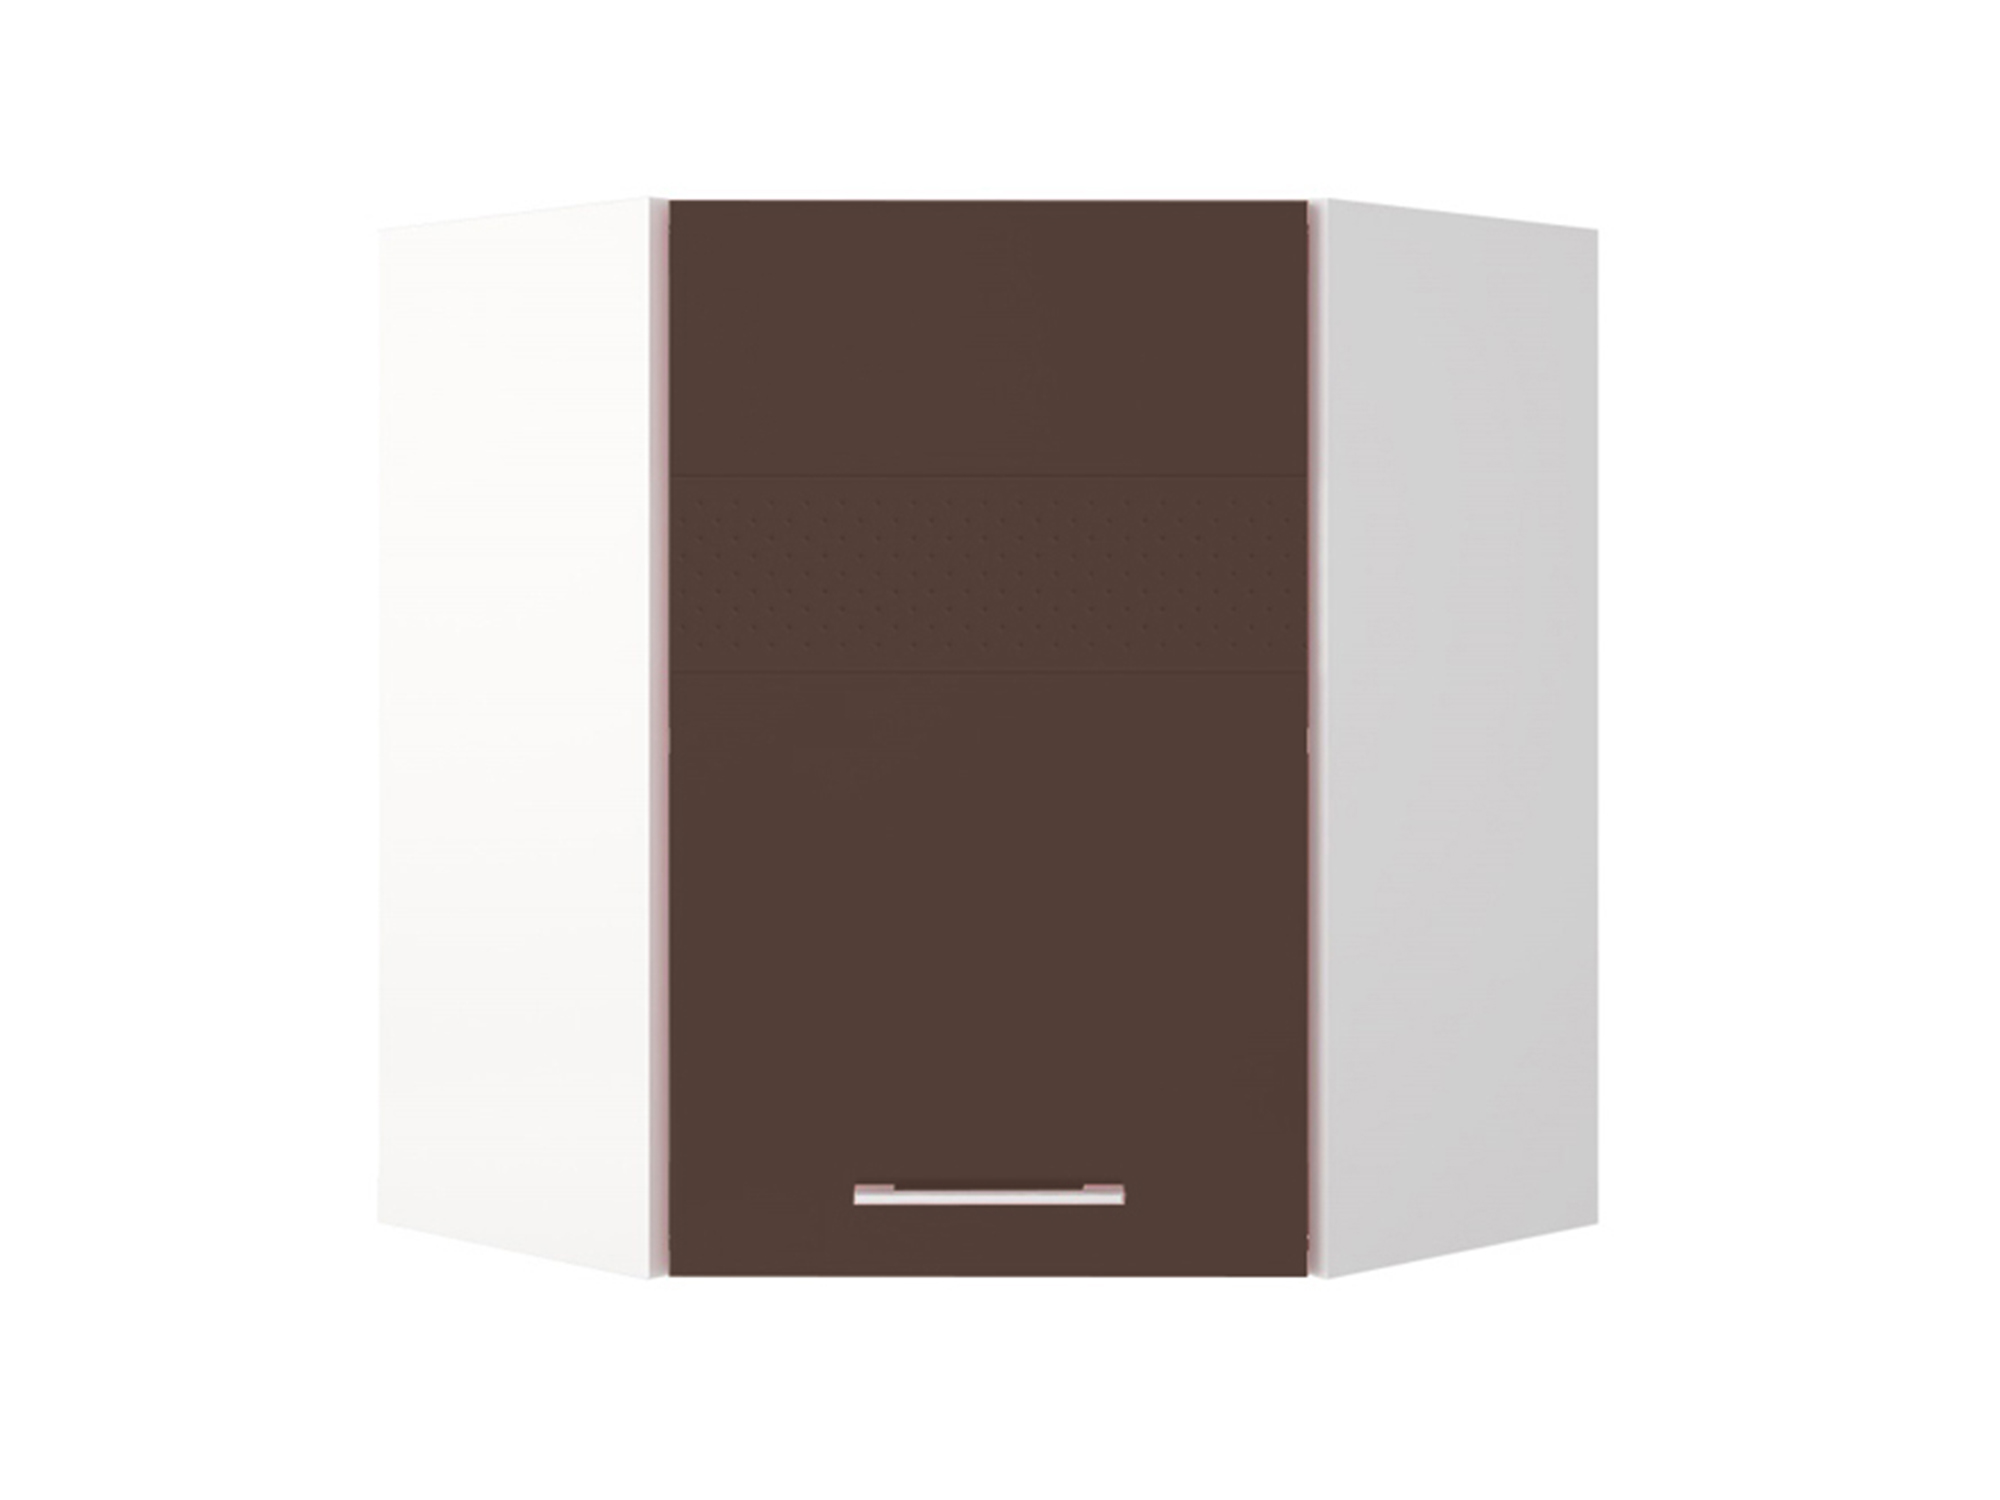 Шкаф навесной угловой Люкс Шоколад глянец, , Коричневый темный, Белый, МДФ, ПВХ, ЛДСП шкаф навесной под вытяжку 50 люкс шоколад глянец коричневый темный белый мдф пвх лдсп